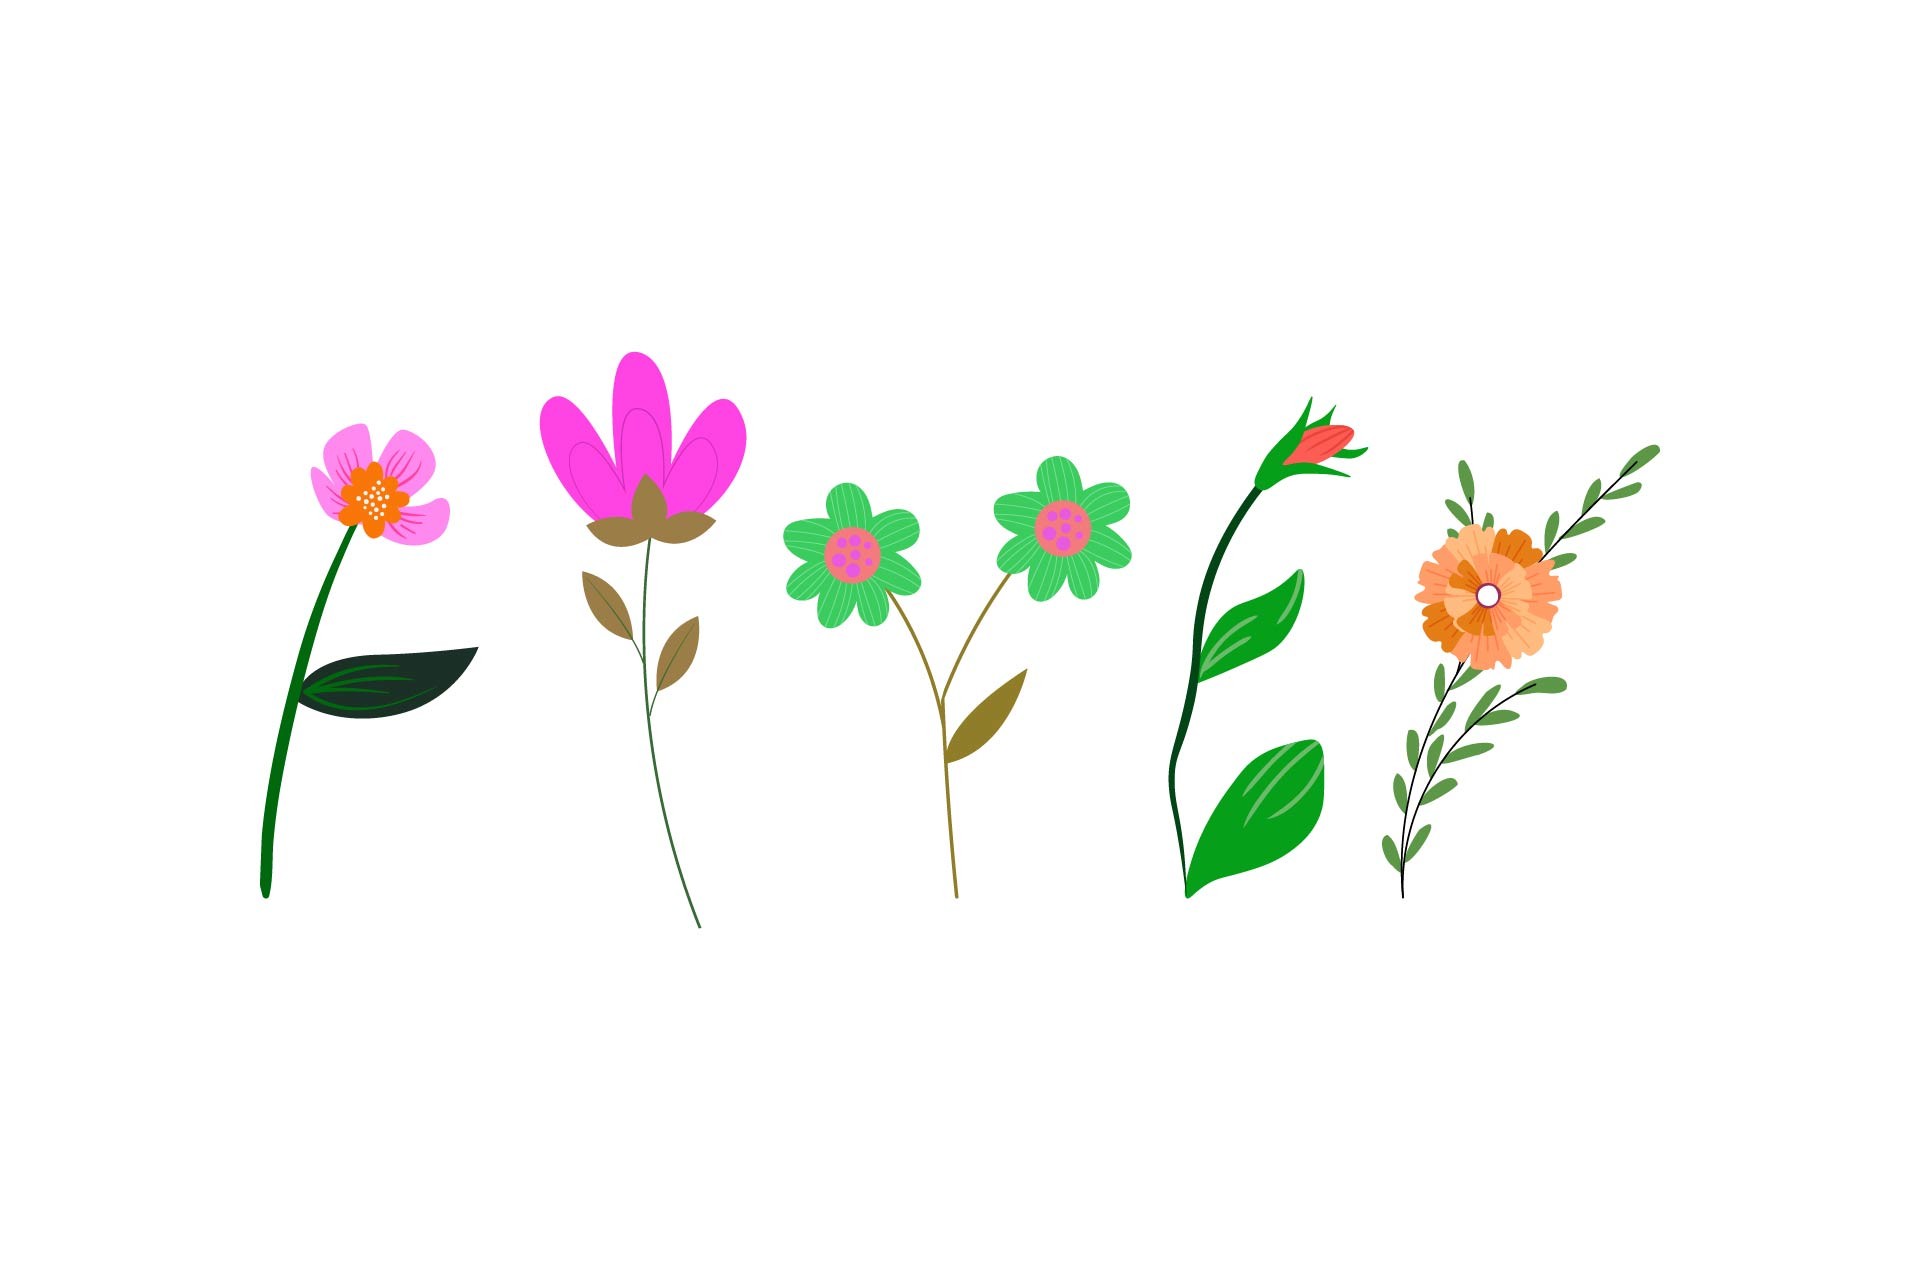 Pixel Art Flower Graphic by biflastudio · Creative Fabrica